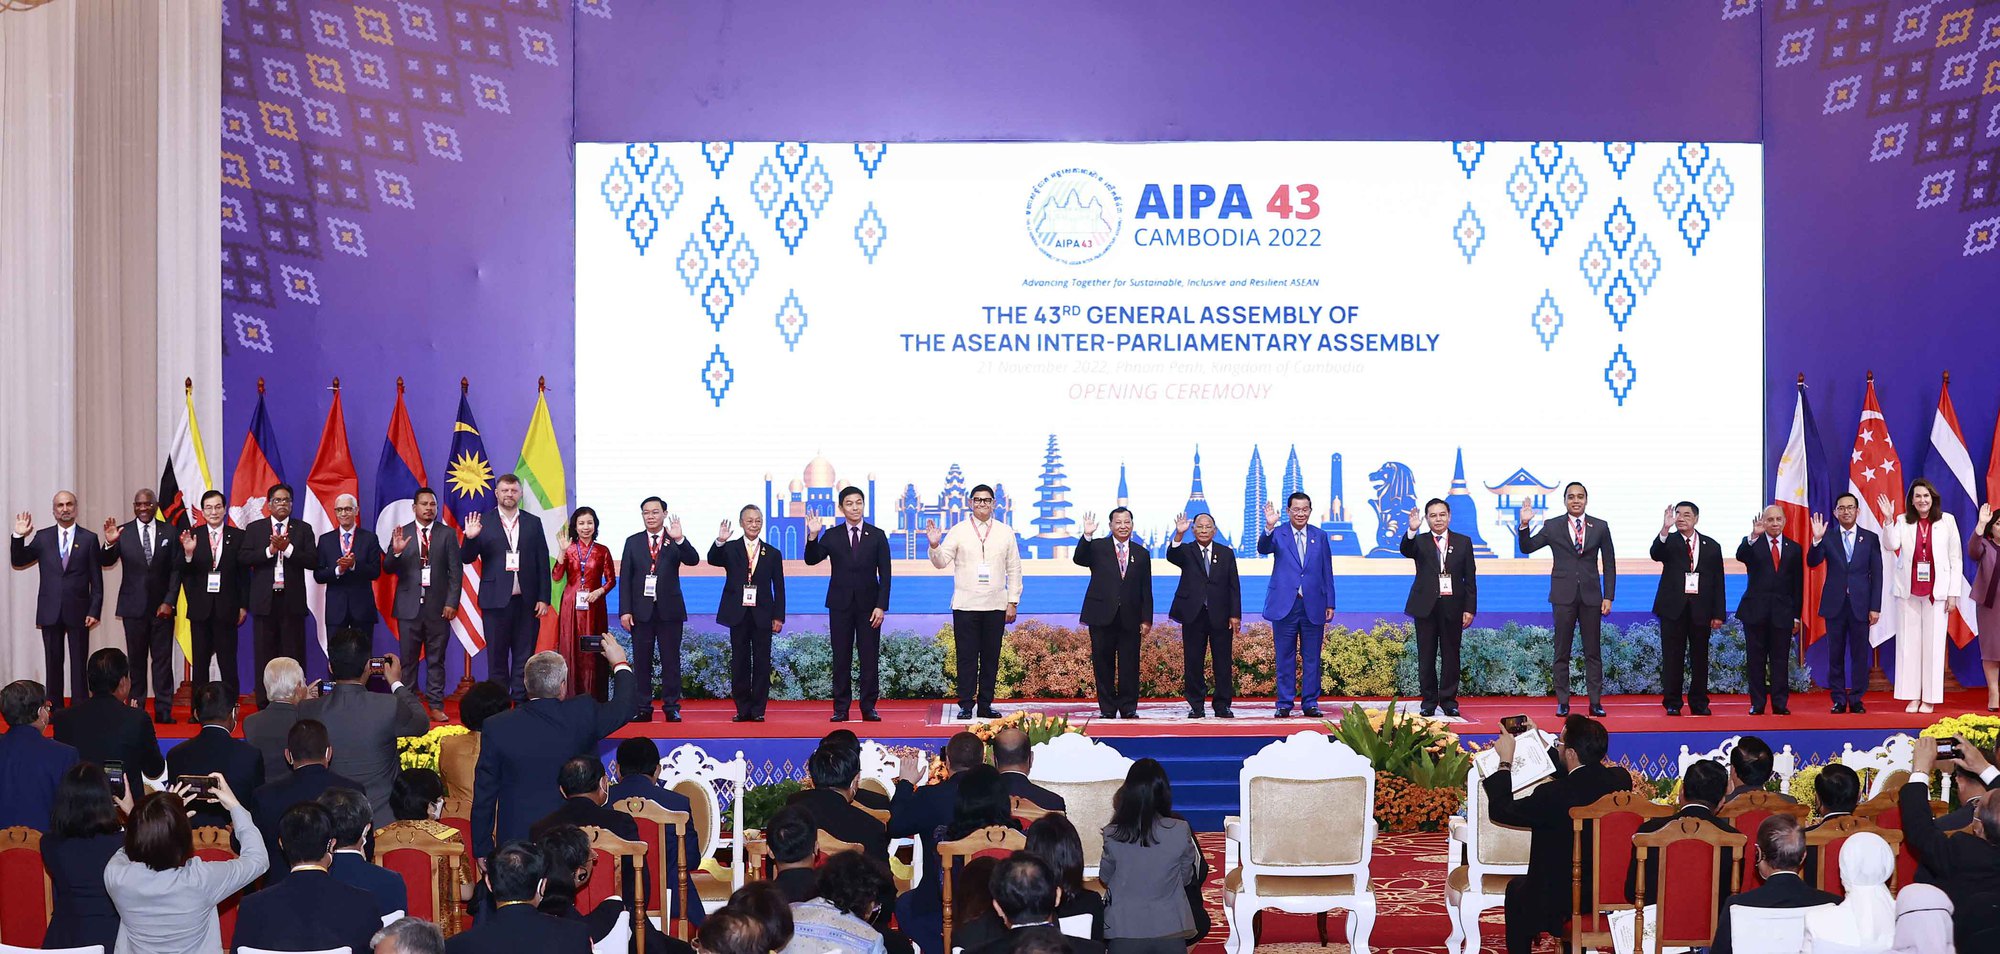 Khai mạc Đại hội đồng liên nghị viện các quốc gia Đông Nam Á lần thứ 43 - Ảnh 11.